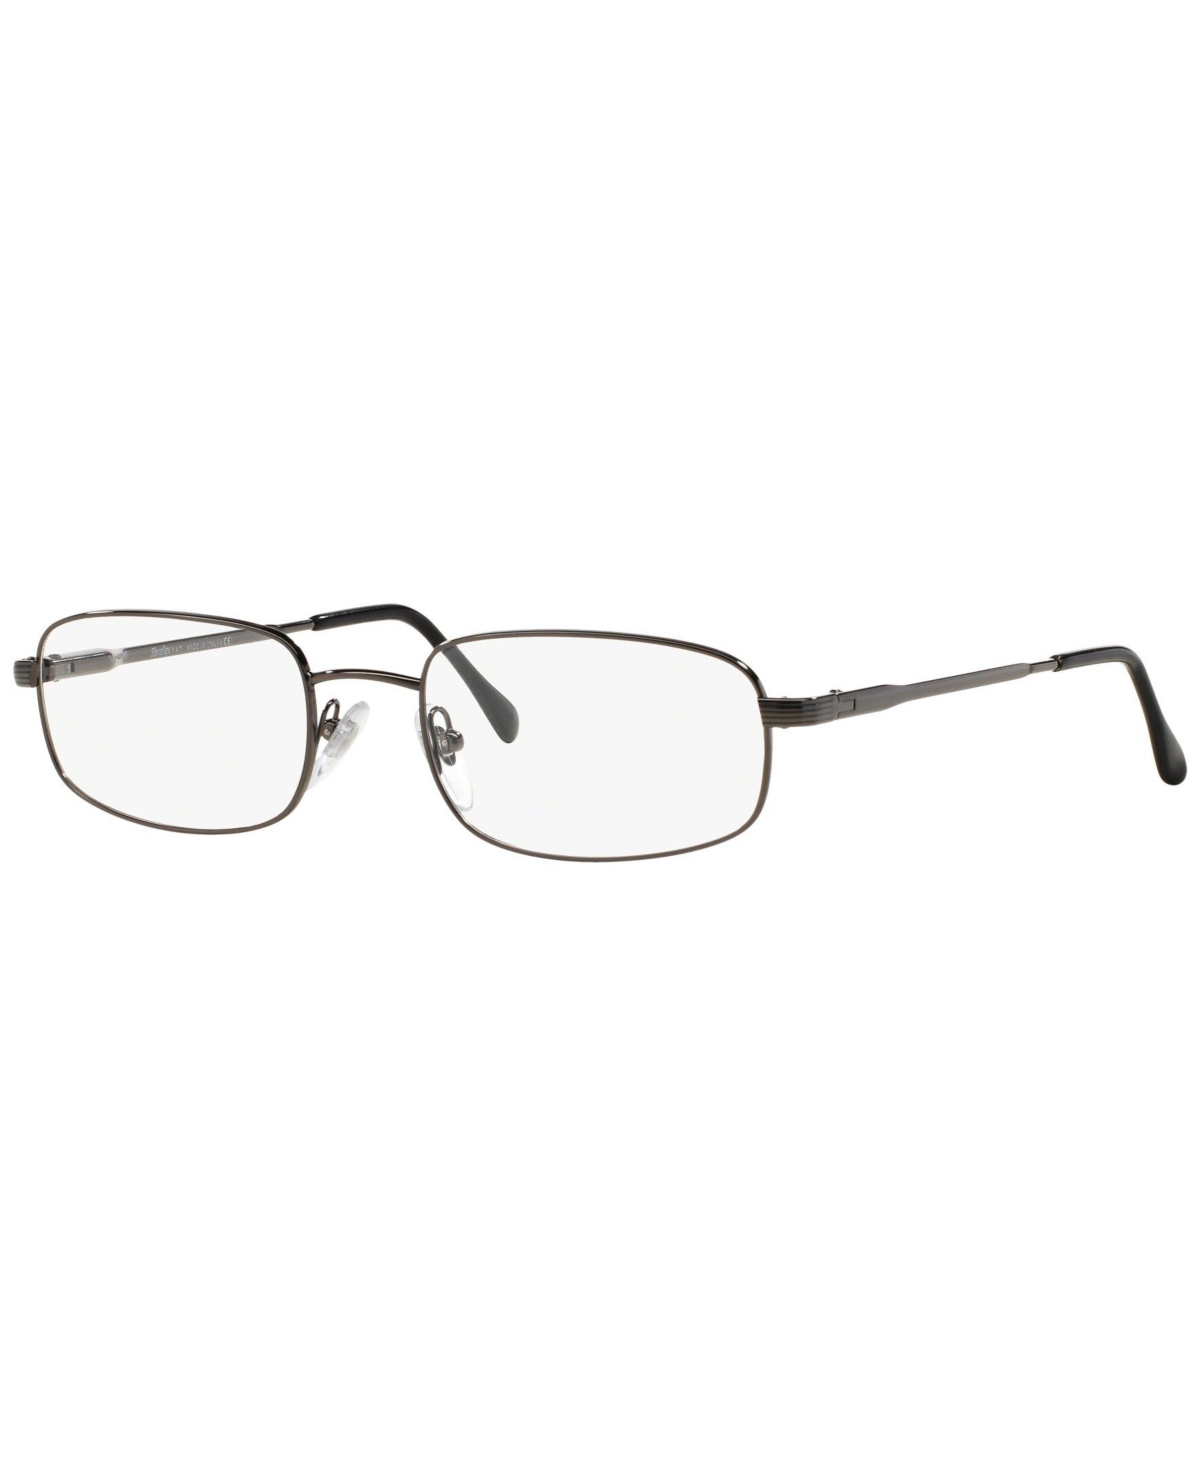 SF2115 Men's Rectangle Eyeglasses - Gunmetal